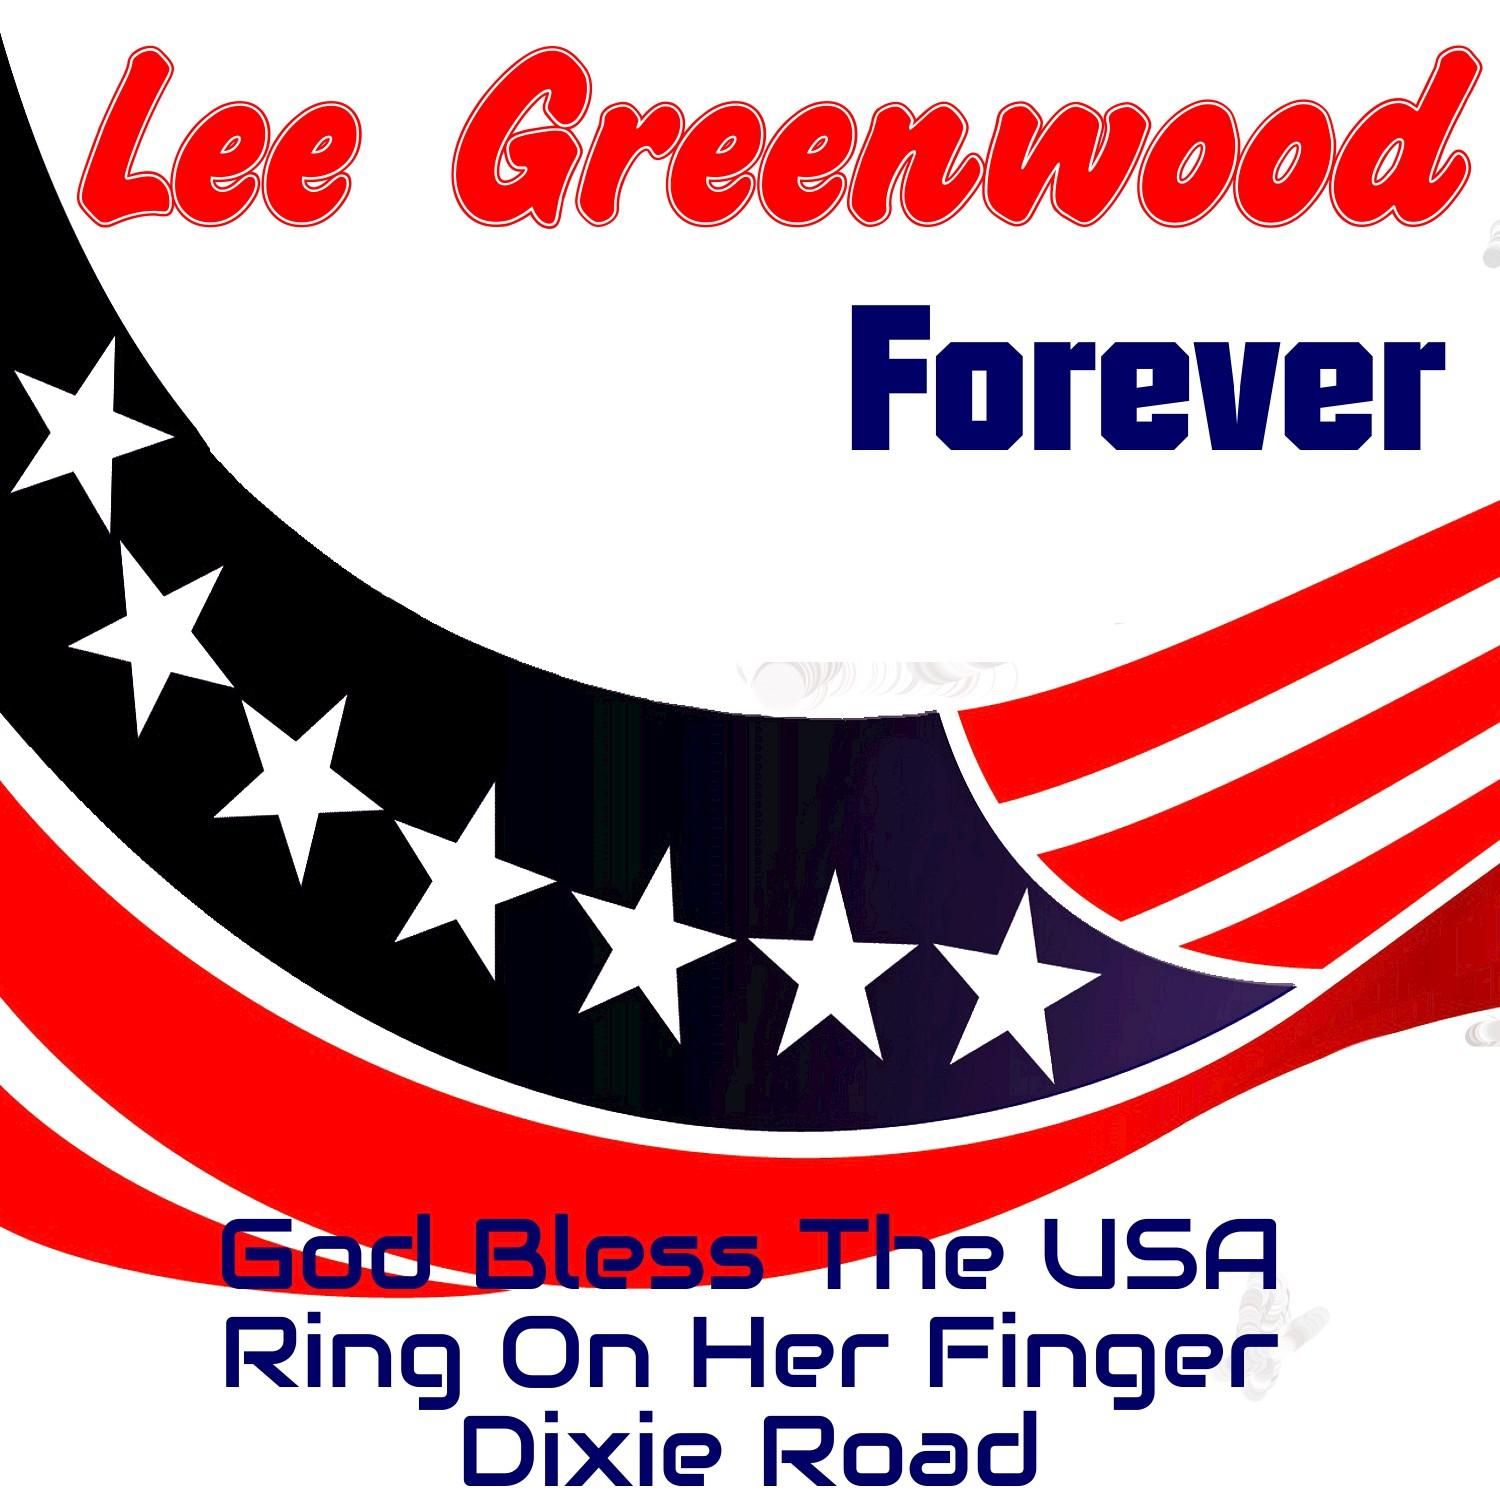 Lee Greenwood Forever